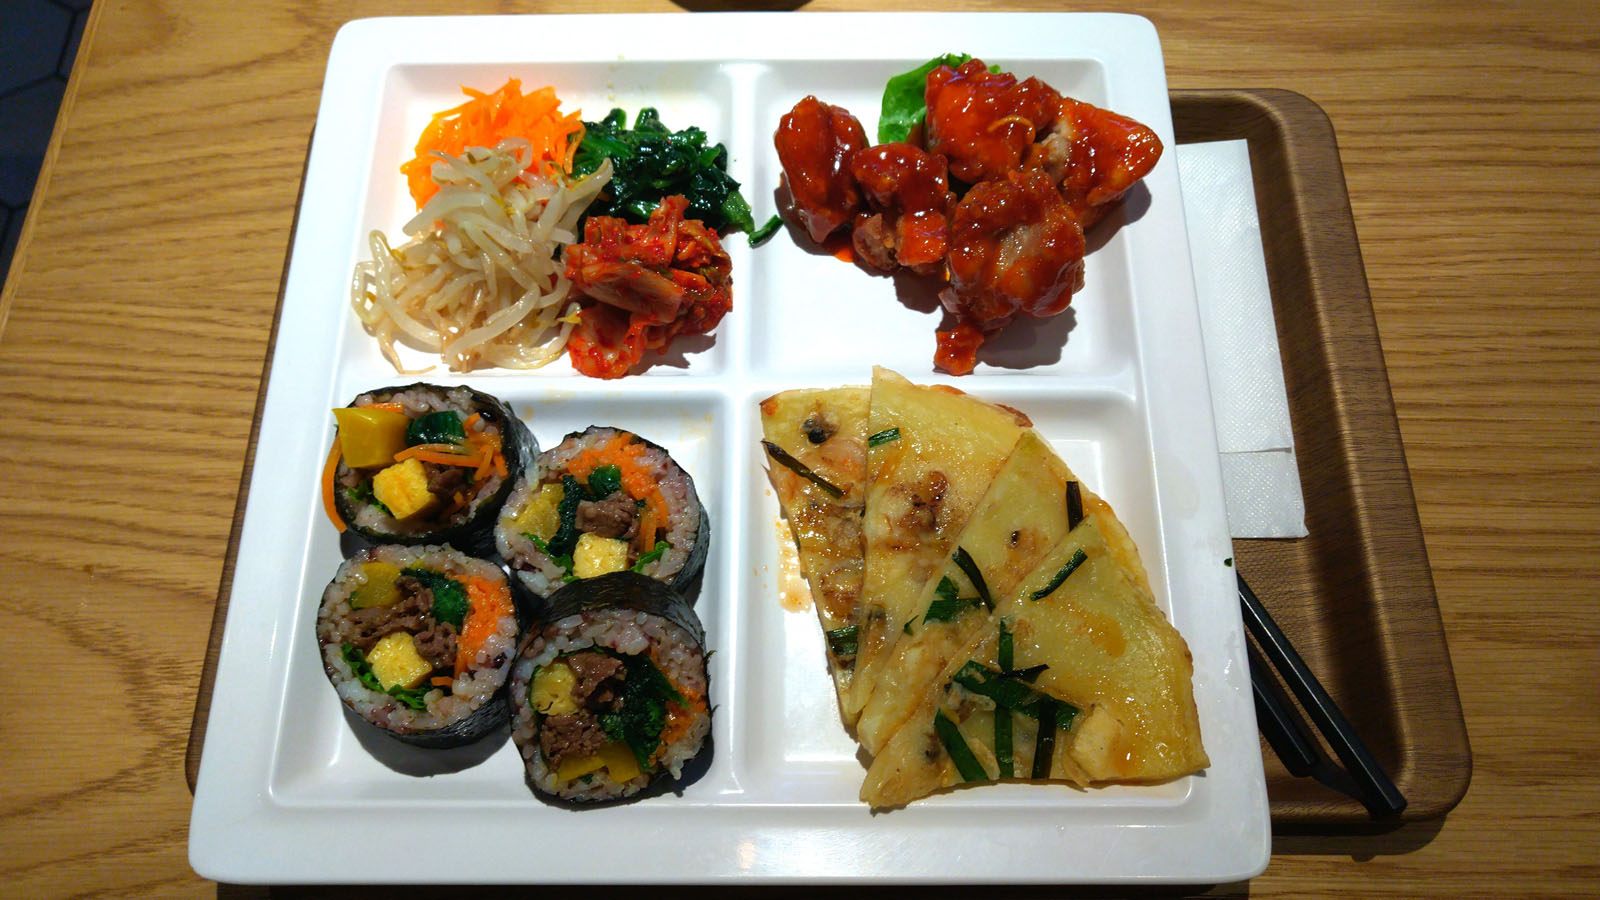 Cial横浜の韓国料理店 チャンゴ のヤンニョムチキンキンパプレート Max Carterの見聞